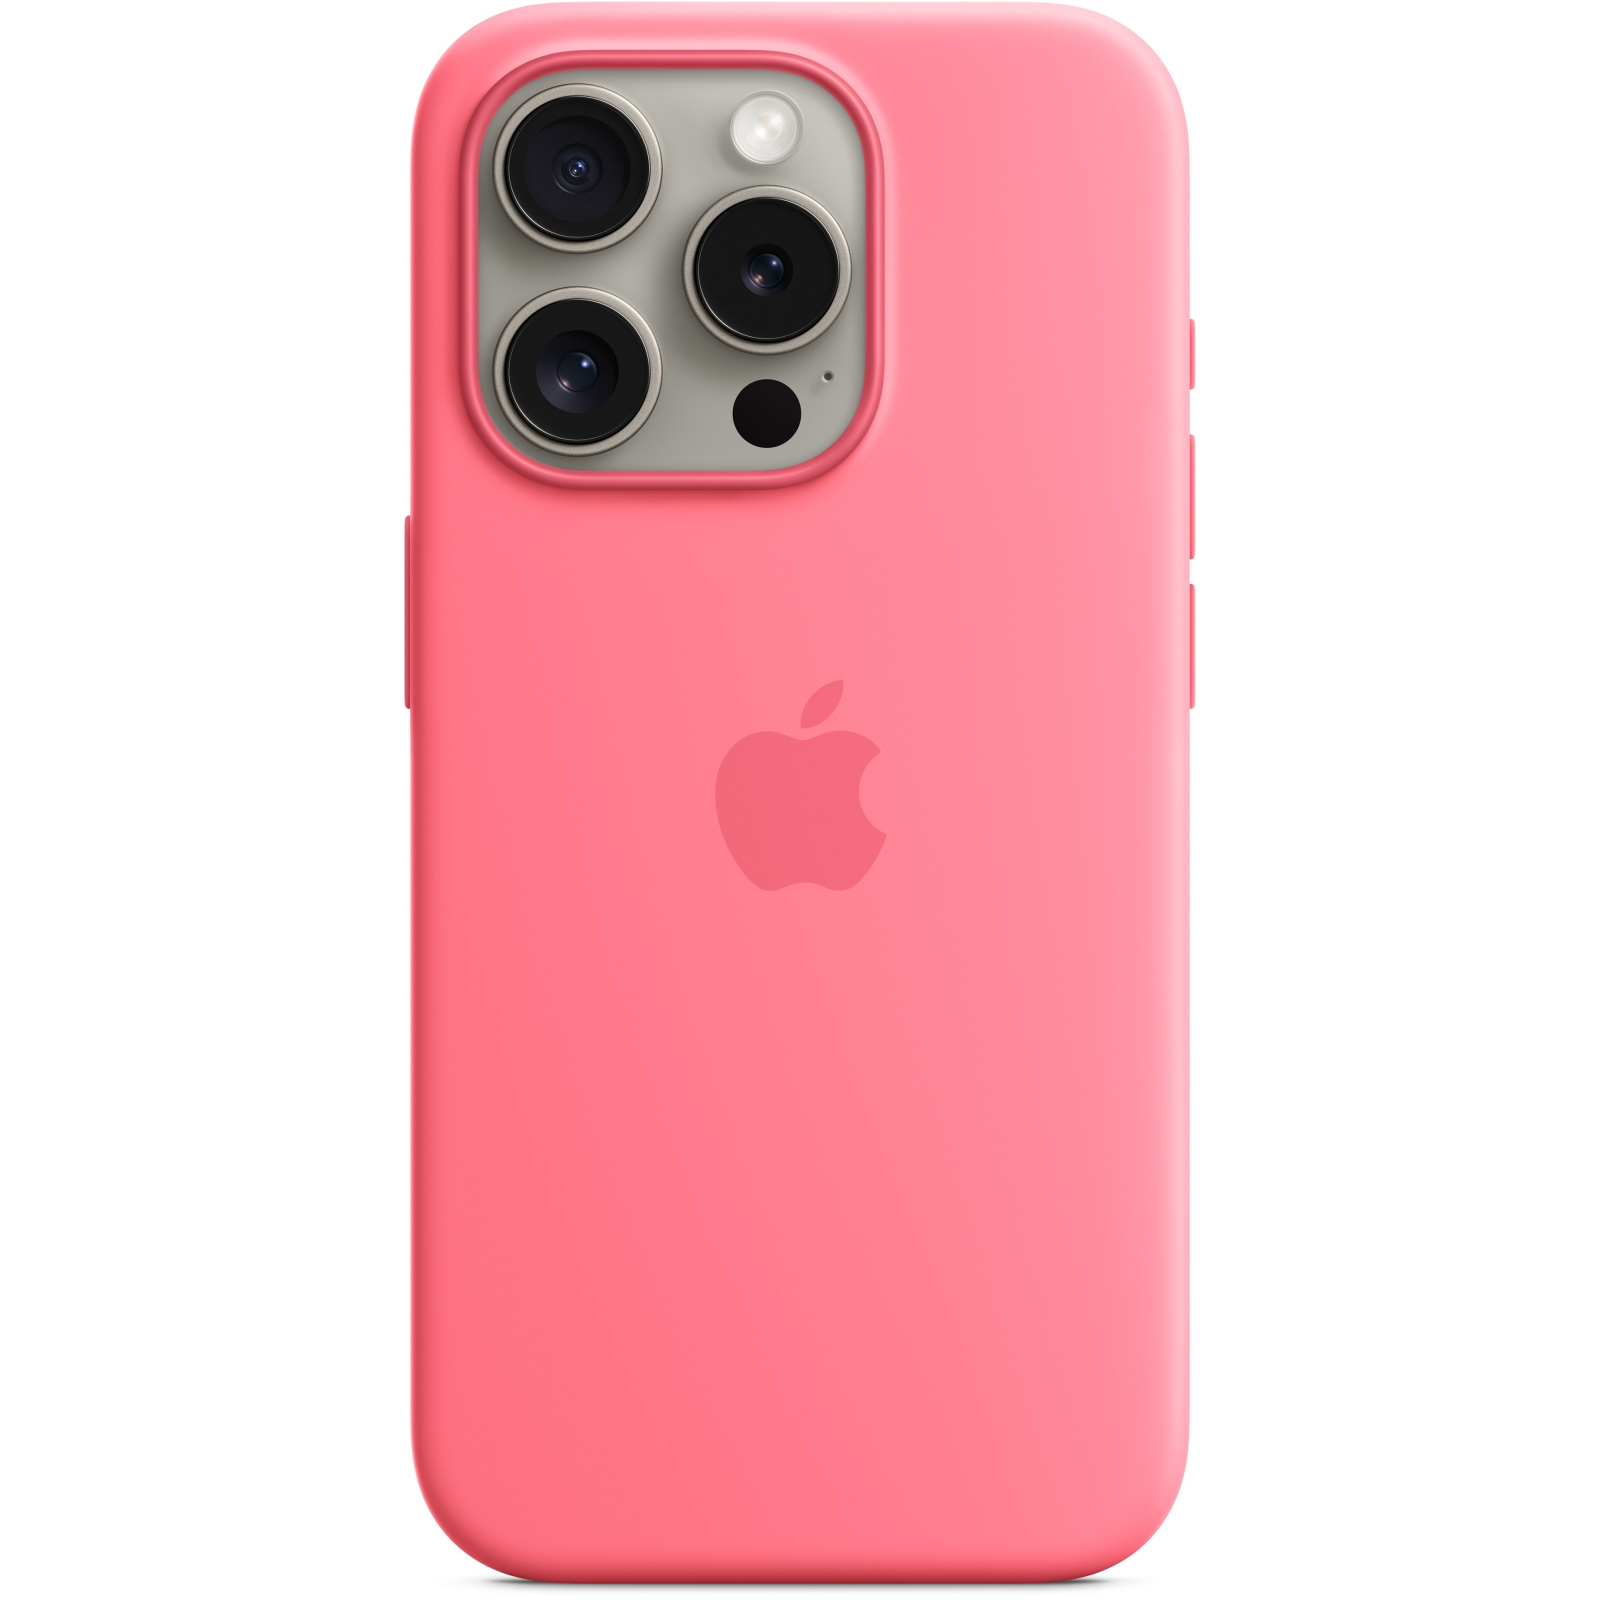 Чехол для мобильного телефона Apple iPhone 15 Pro Silicone Case with MagSafe - Sunshine,Model A3125 (MWNK3ZM/A) изображение 3